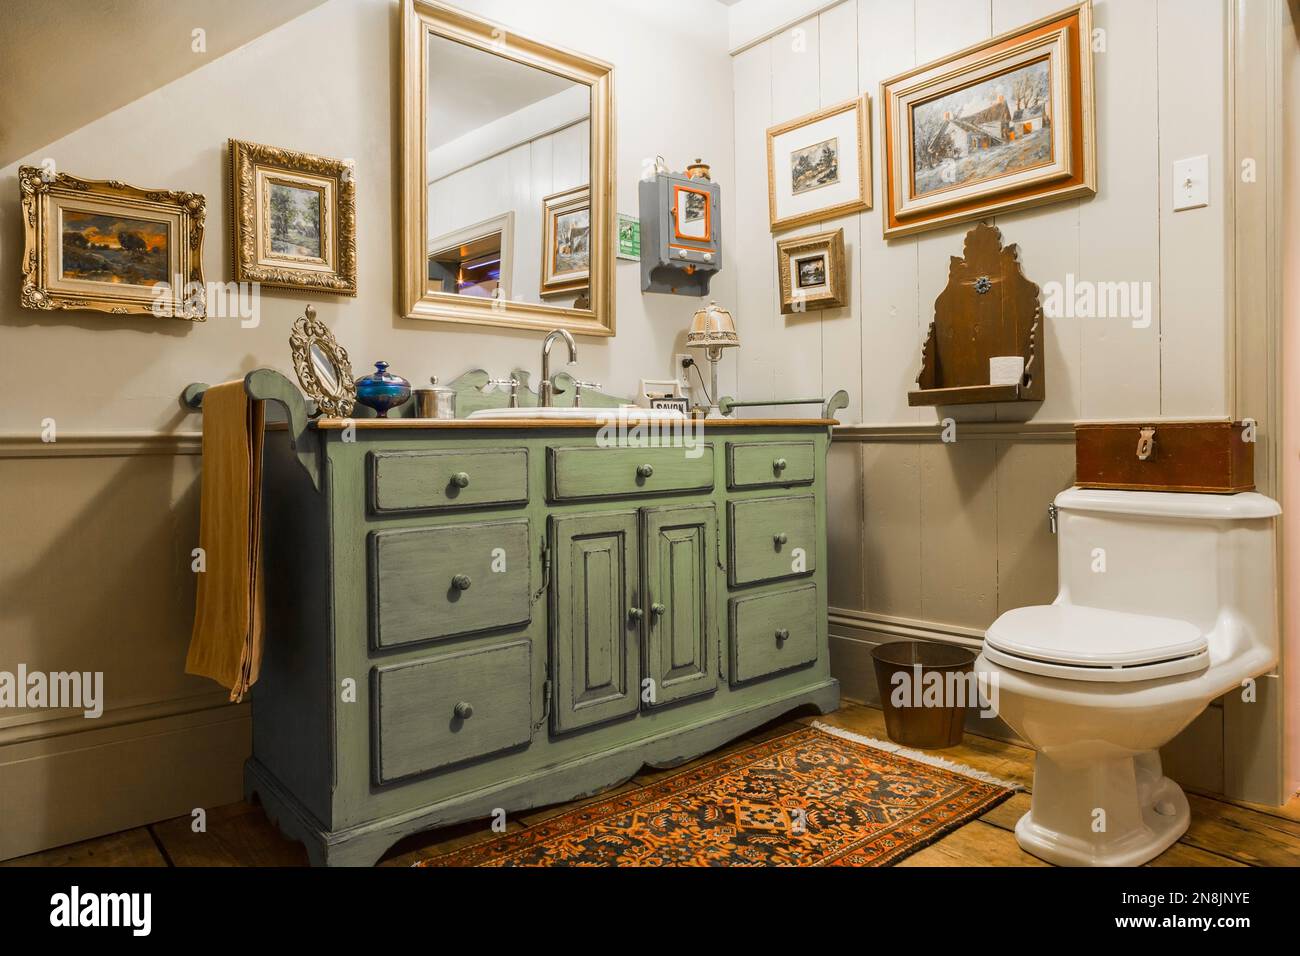 Meuble lavabo en bois antique vert et gris et toilettes en porcelaine blanche dans la salle de bains sur le sol upsatirs à l'intérieur de la vieille maison de chalet Canadiana circa 1805. Banque D'Images